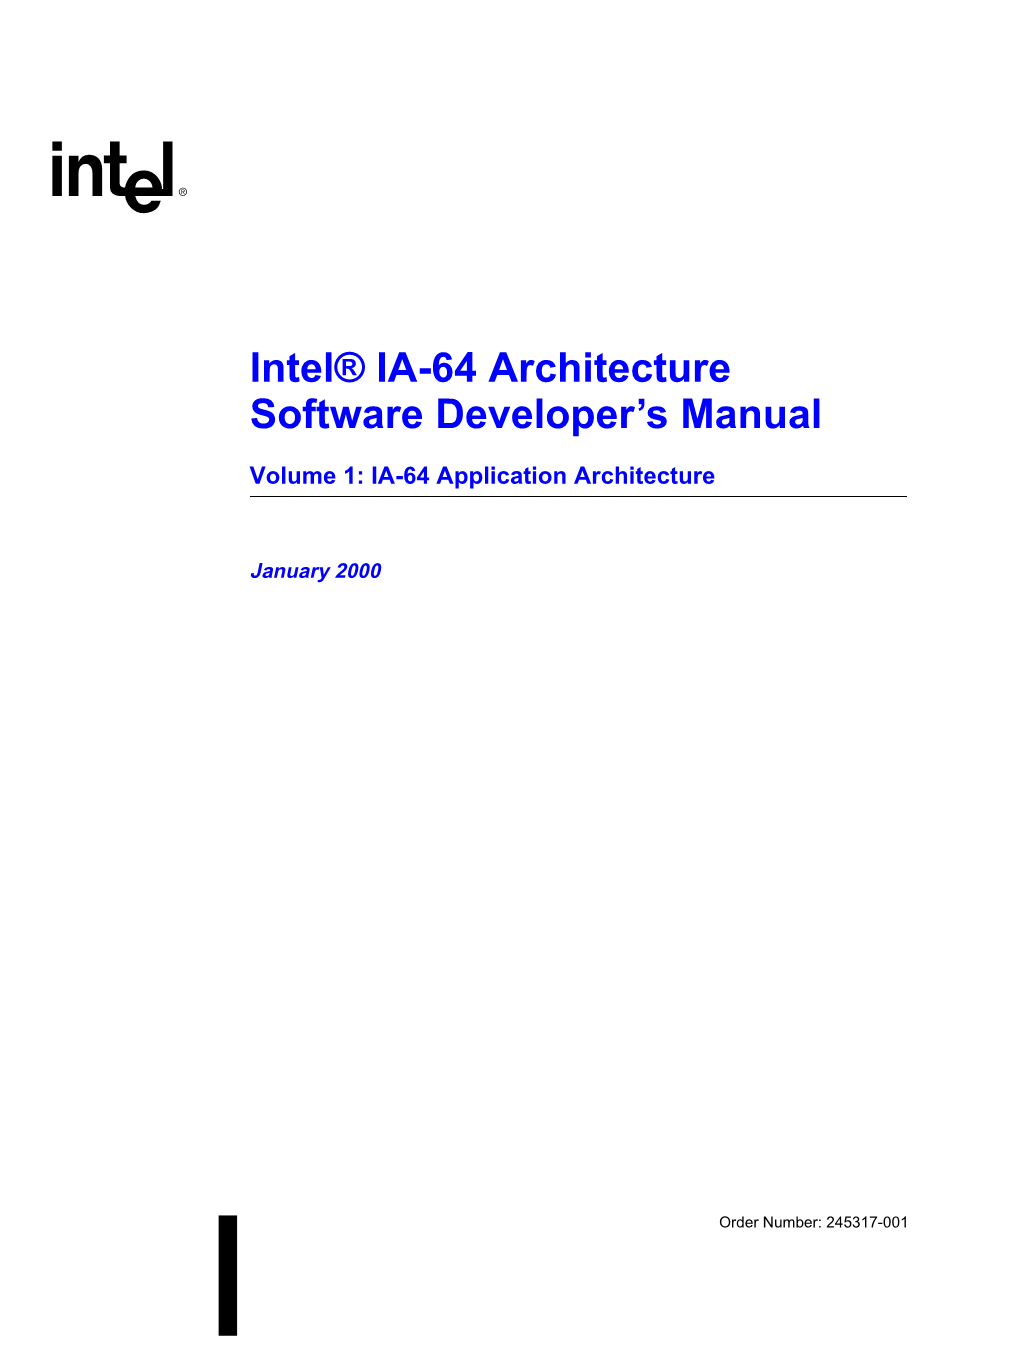 Intel® IA-64 Architecture Software Developer's Manual